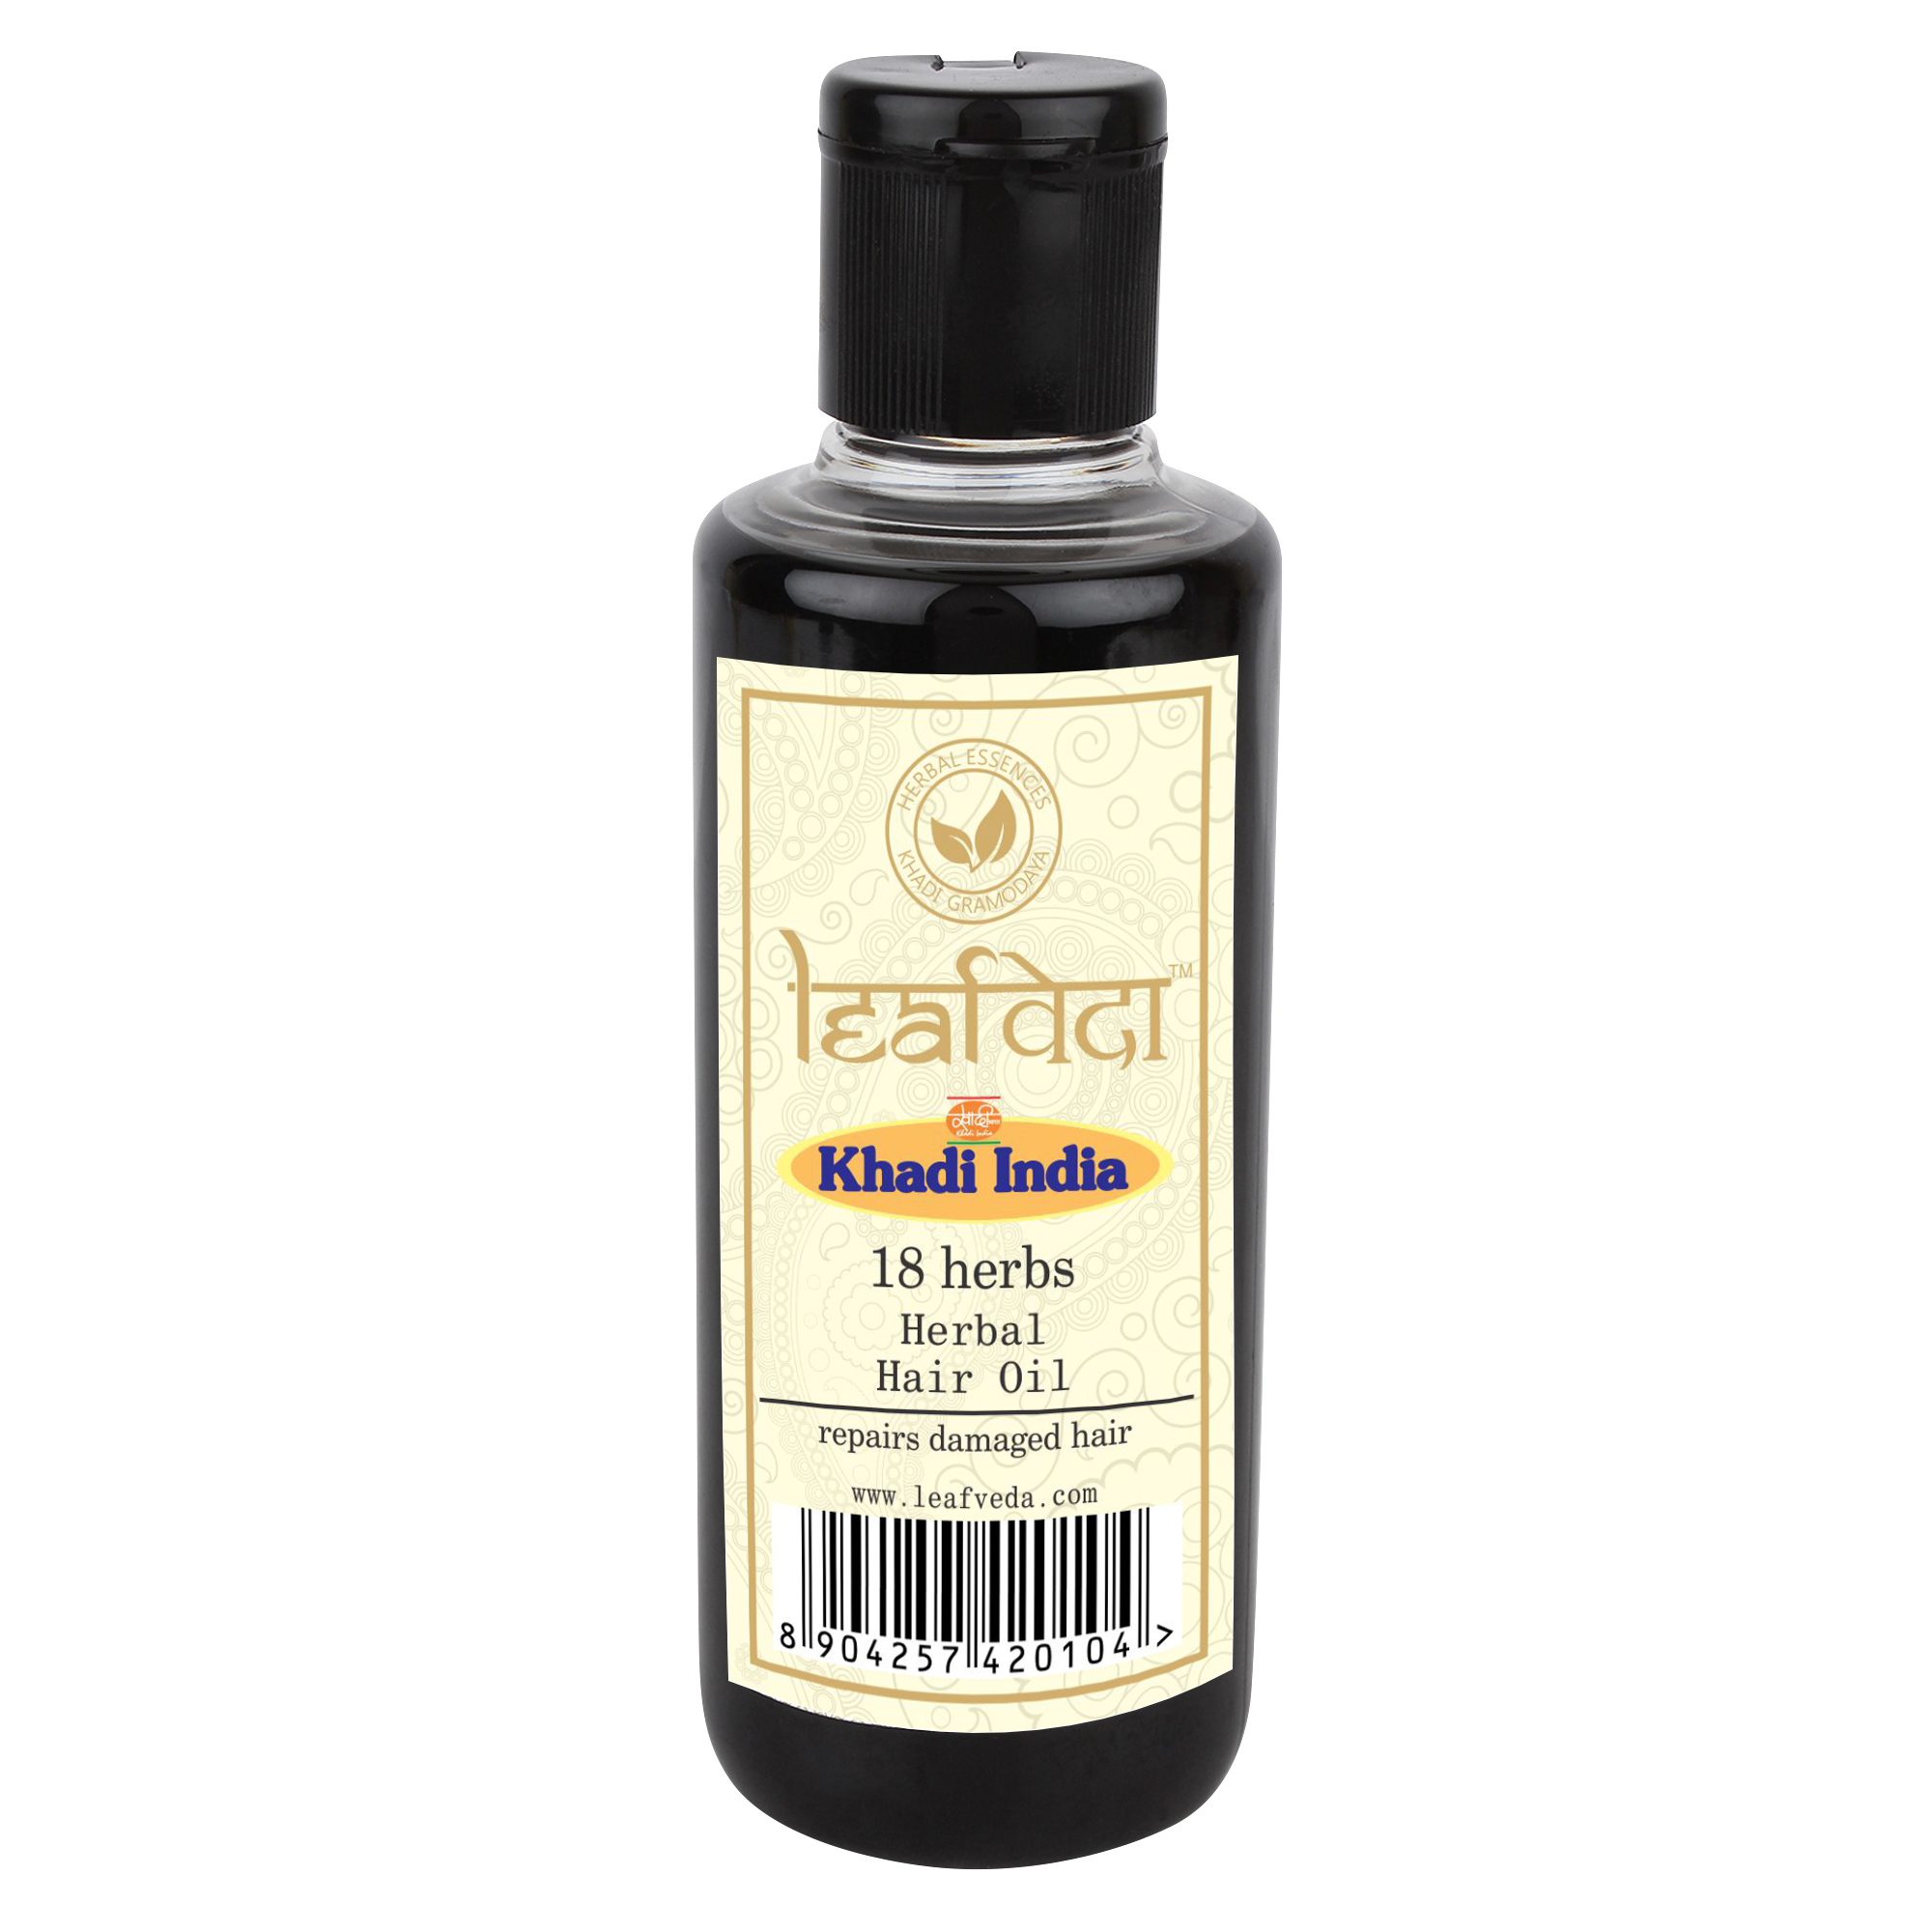 Buy Khadi Leafveda 18 herbs Hair oil at Best Price Online